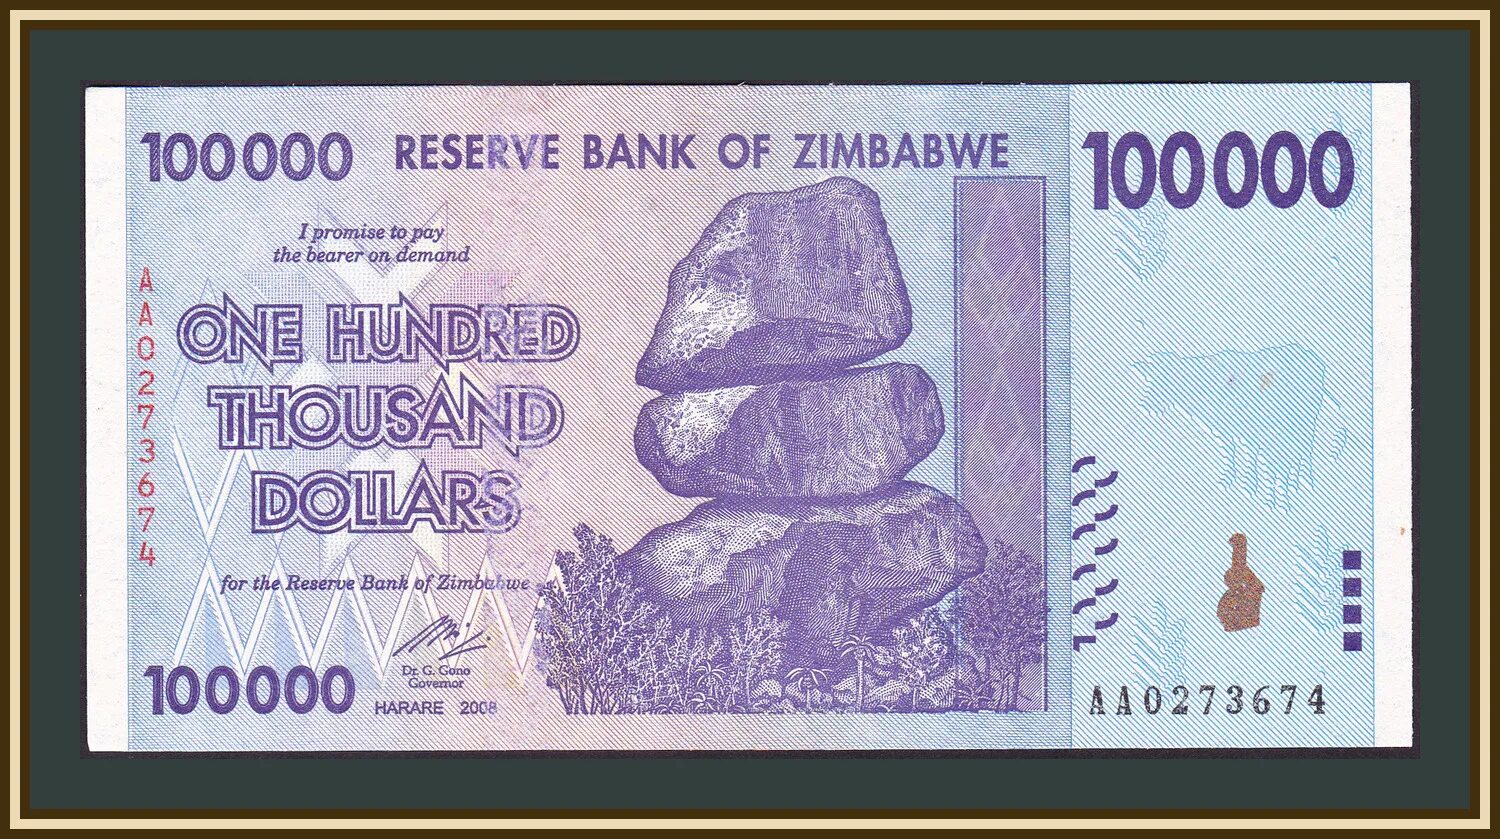 Купюра 10 триллионов долларов Зимбабве. Купюра 100 триллионов долларов Зимбабве. 100 000 000 000 000 Долларов Зимбабве. Купюра в 1 миллиард долларов Зимбабве. 100000 миллионов плюс 100000 миллионов